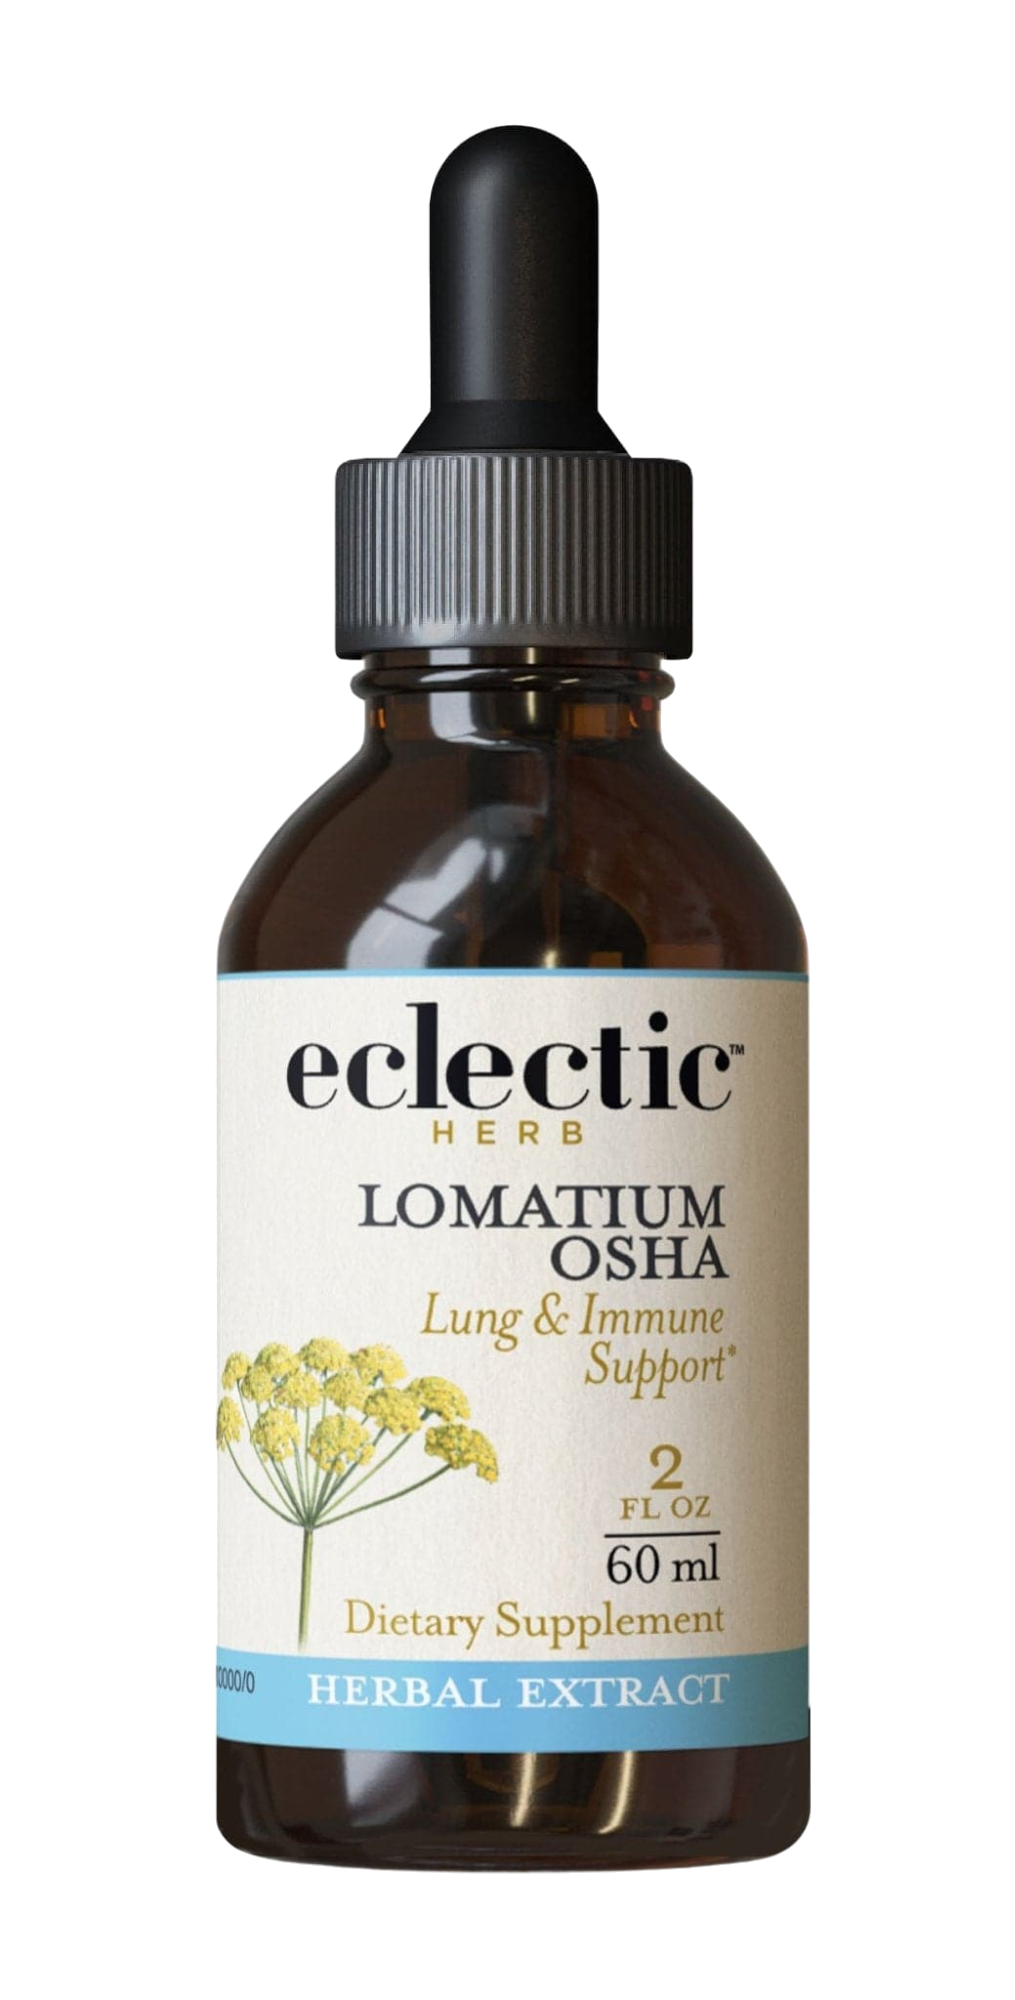 Lomatium Osha Extract